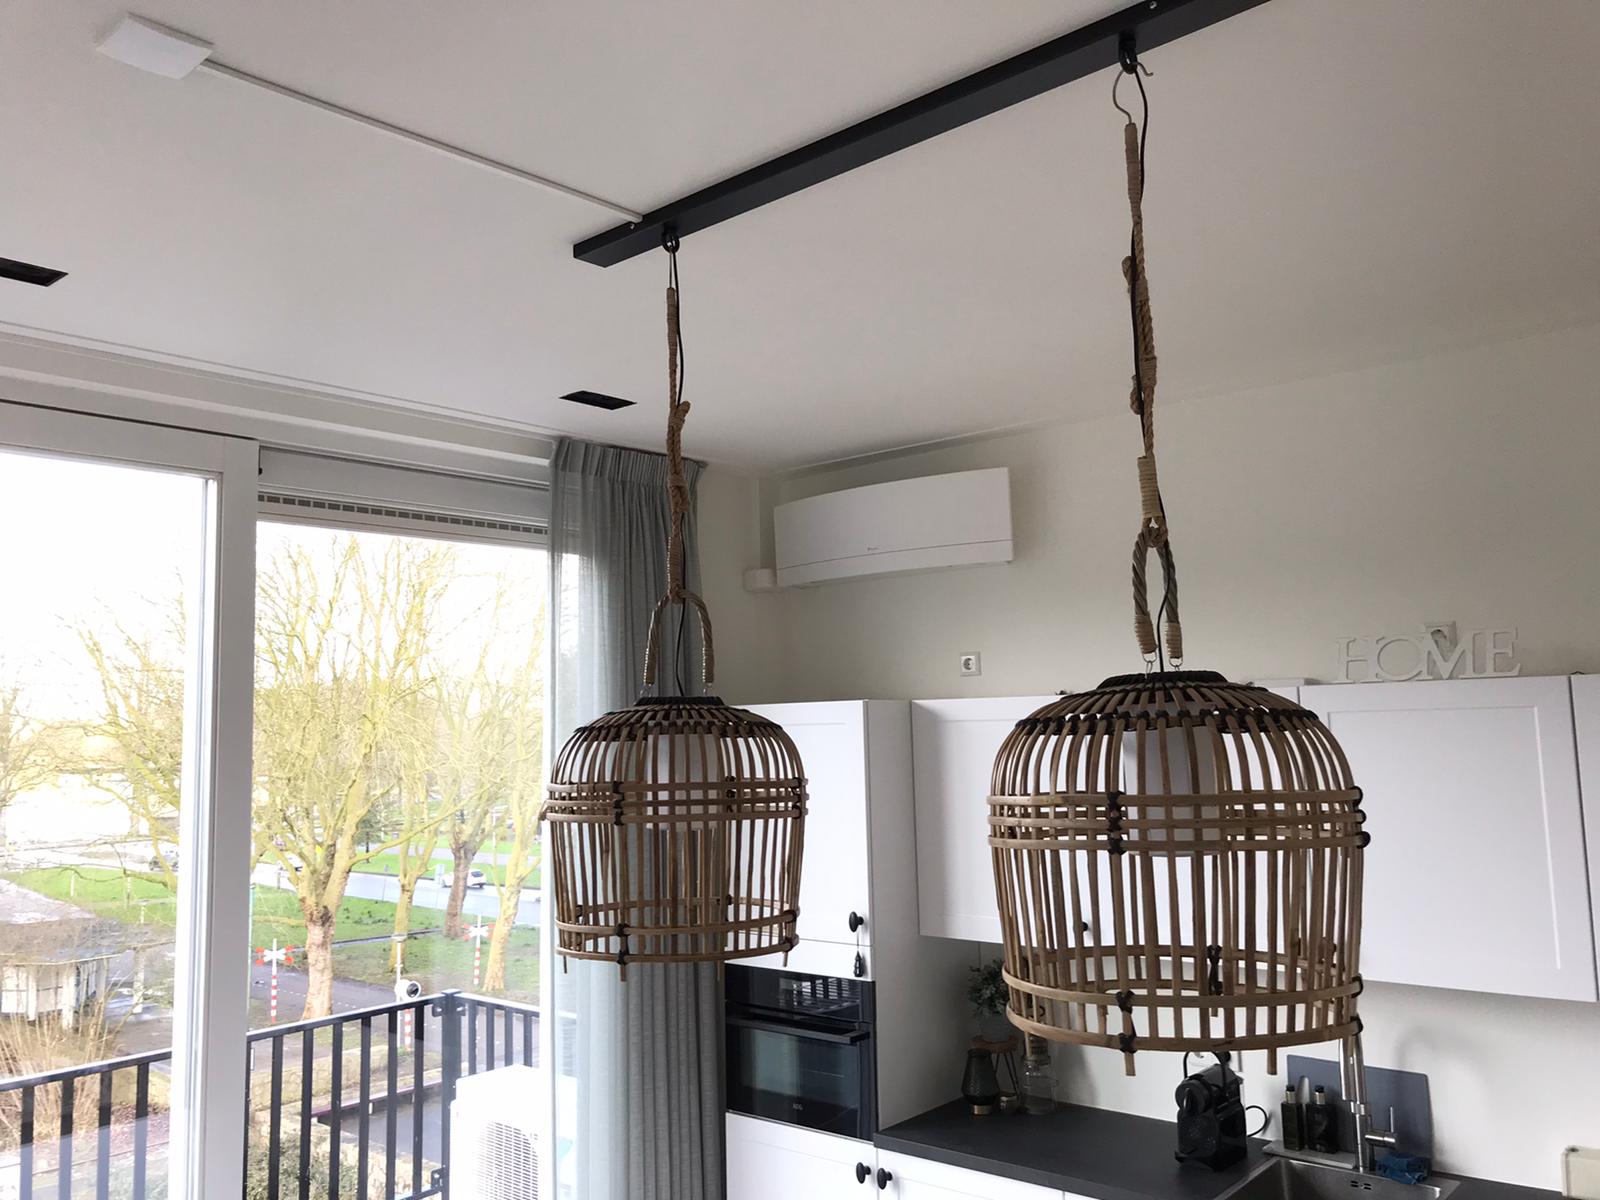 Spruijt Klimaat -Airco keuken appartement Amsterdam daikin emura spruijt klimaattechniek